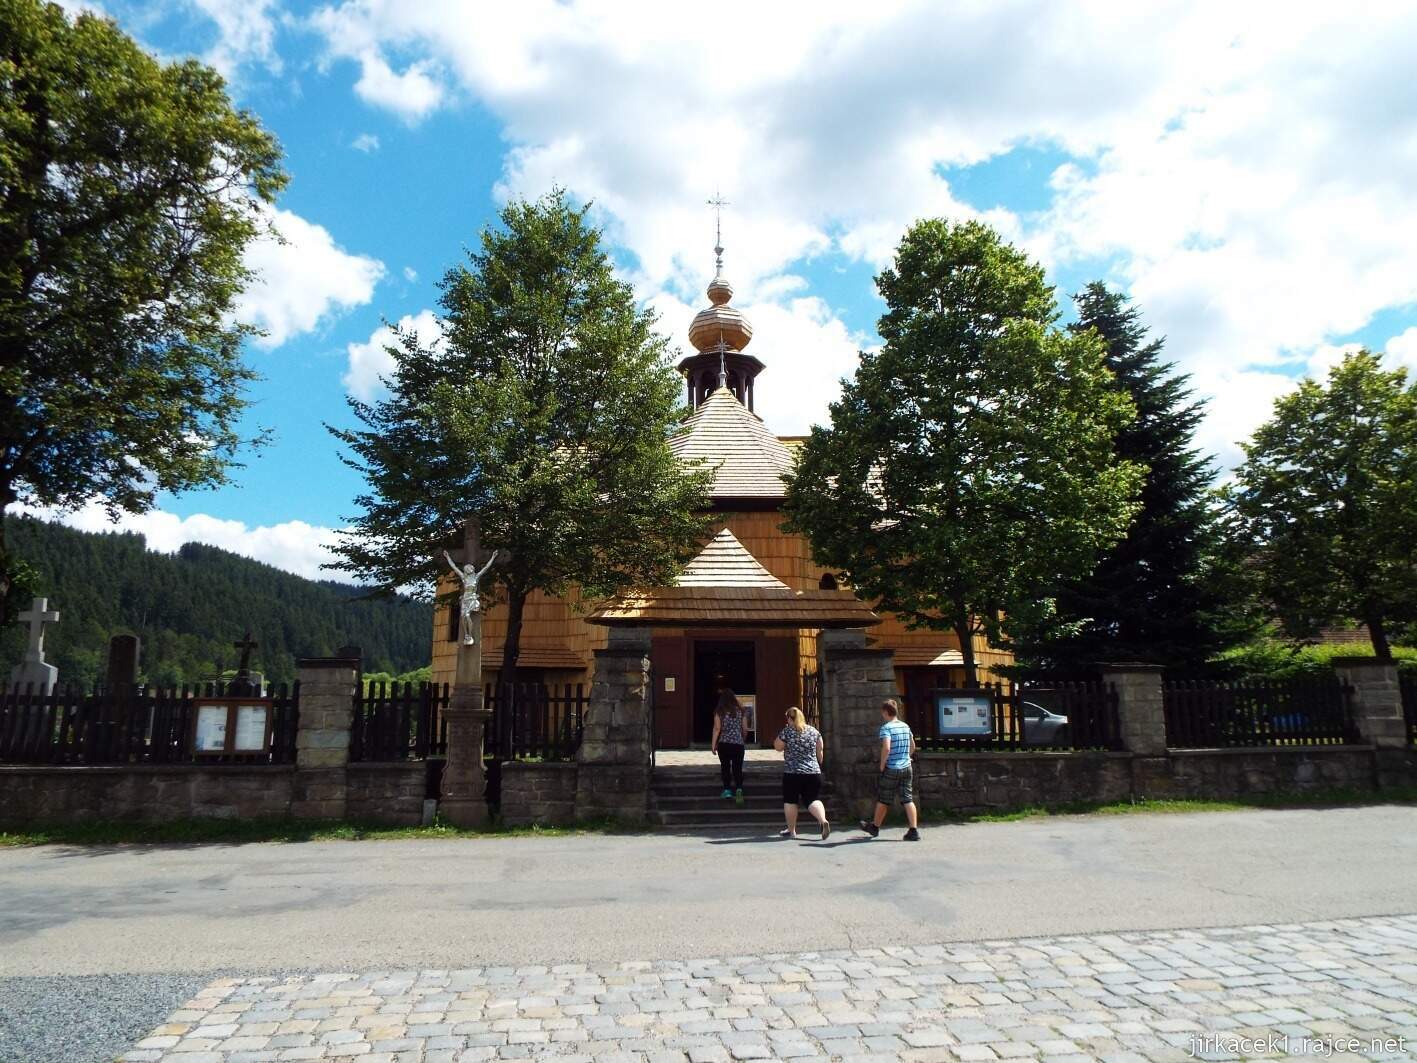 021 - Velké Karlovice - Kostel Panny Marie Sněžné 02 - čelní pohled